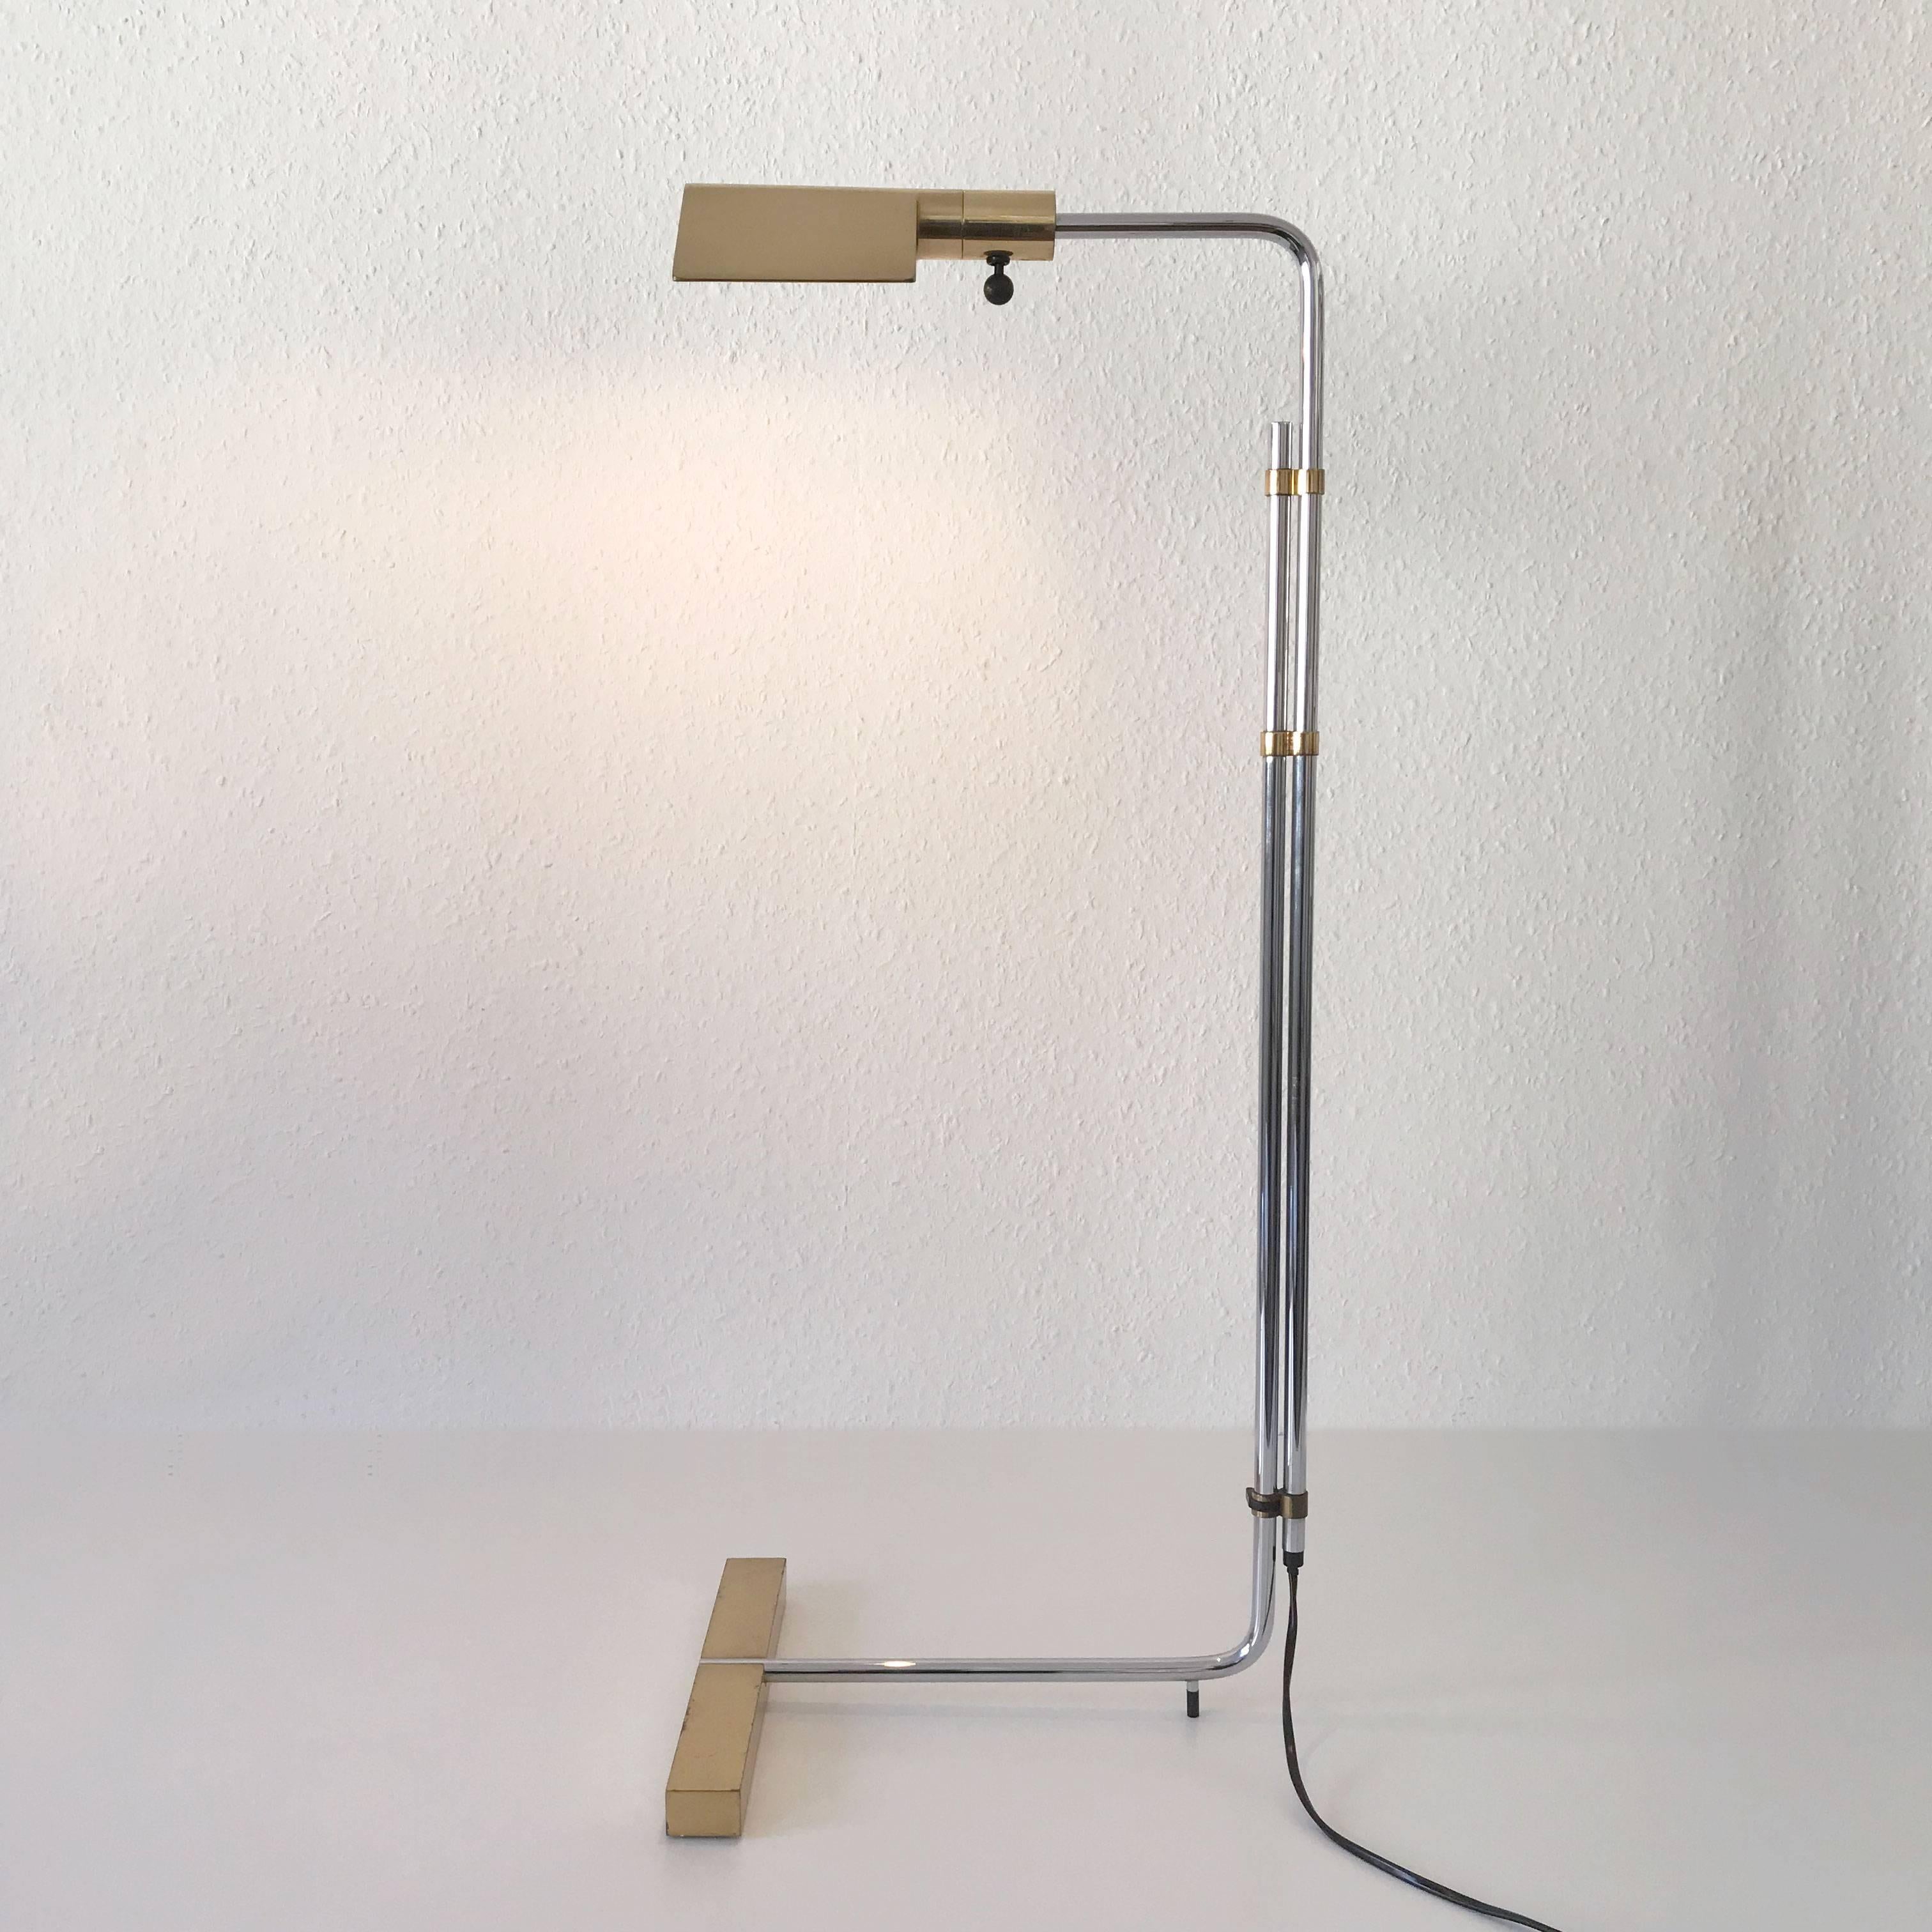 Swiss Articulated Floor Lamp by Cedric Hartman for Jack Lenor Larsen, 1966